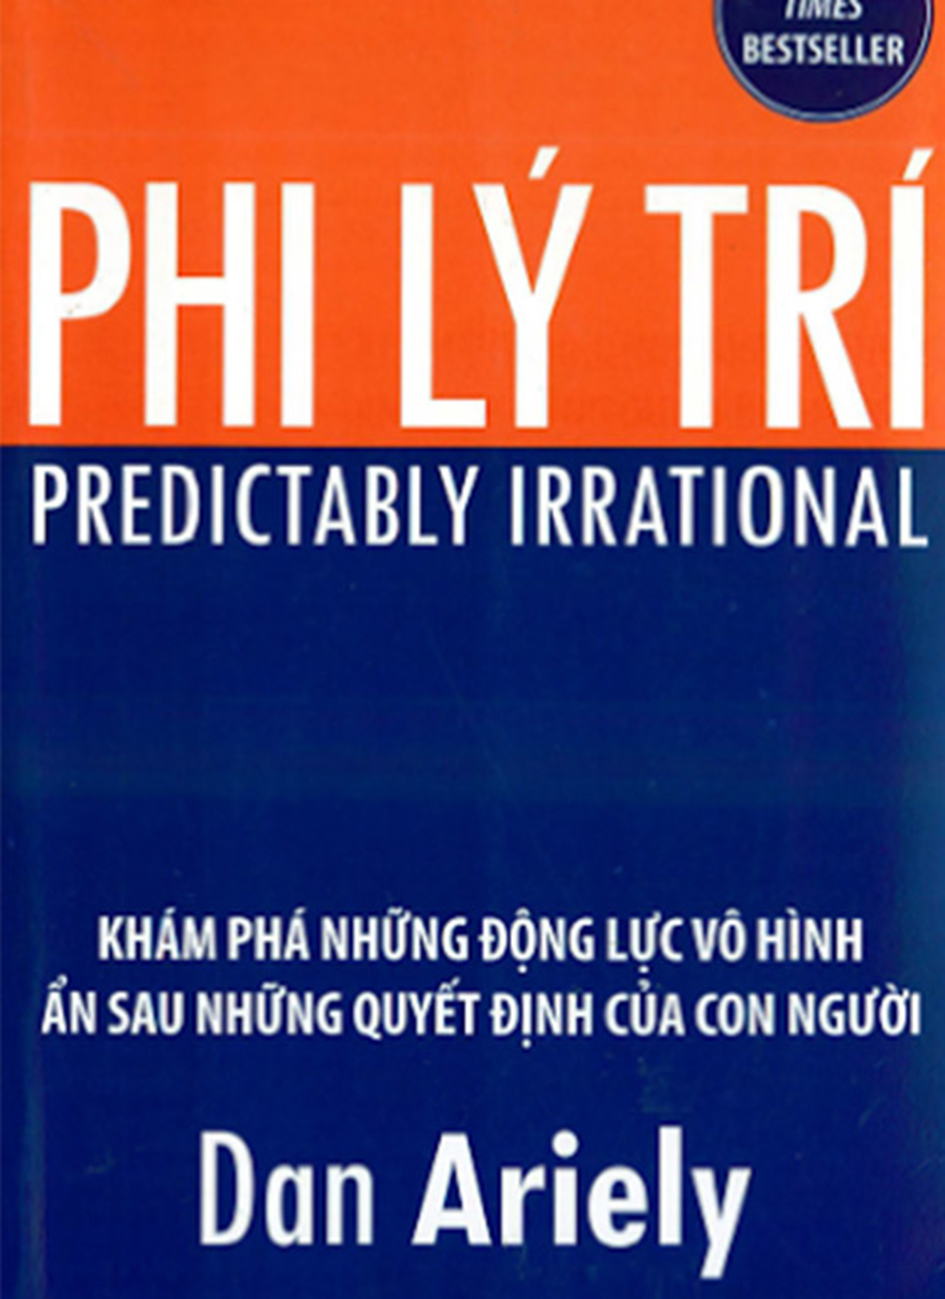 Phi Ly Tri